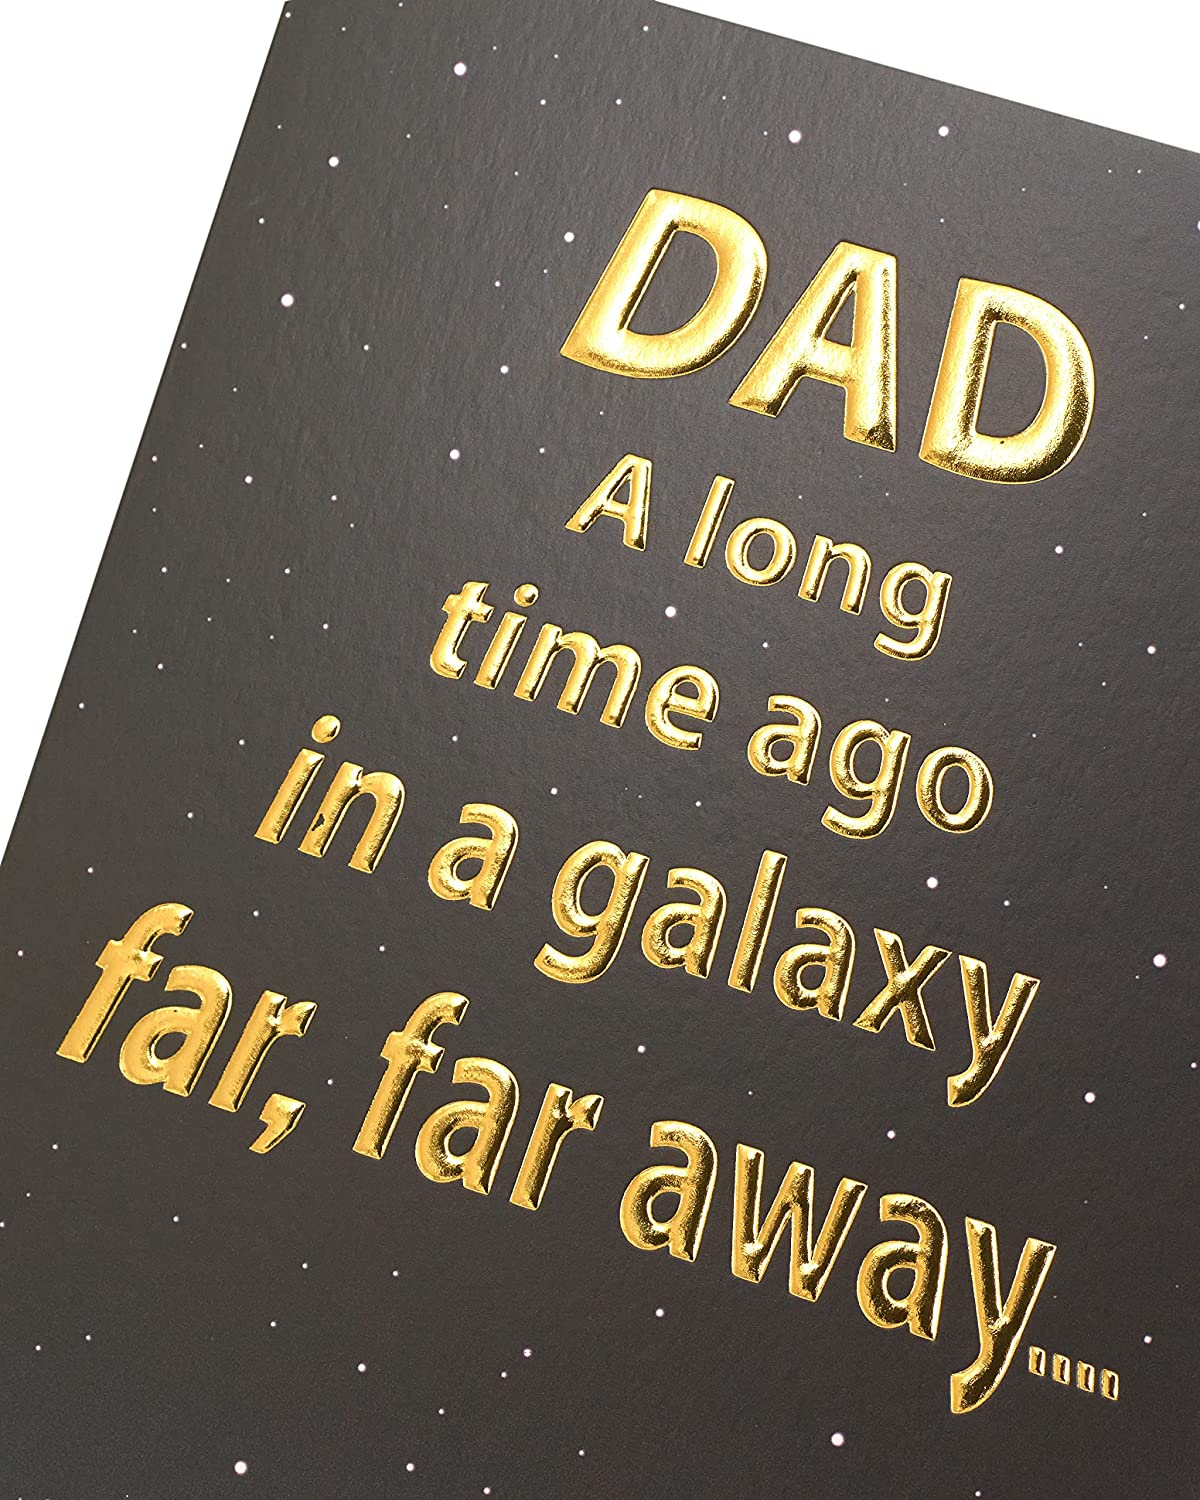 Star Wars Galaxy Birthday Card for Dad